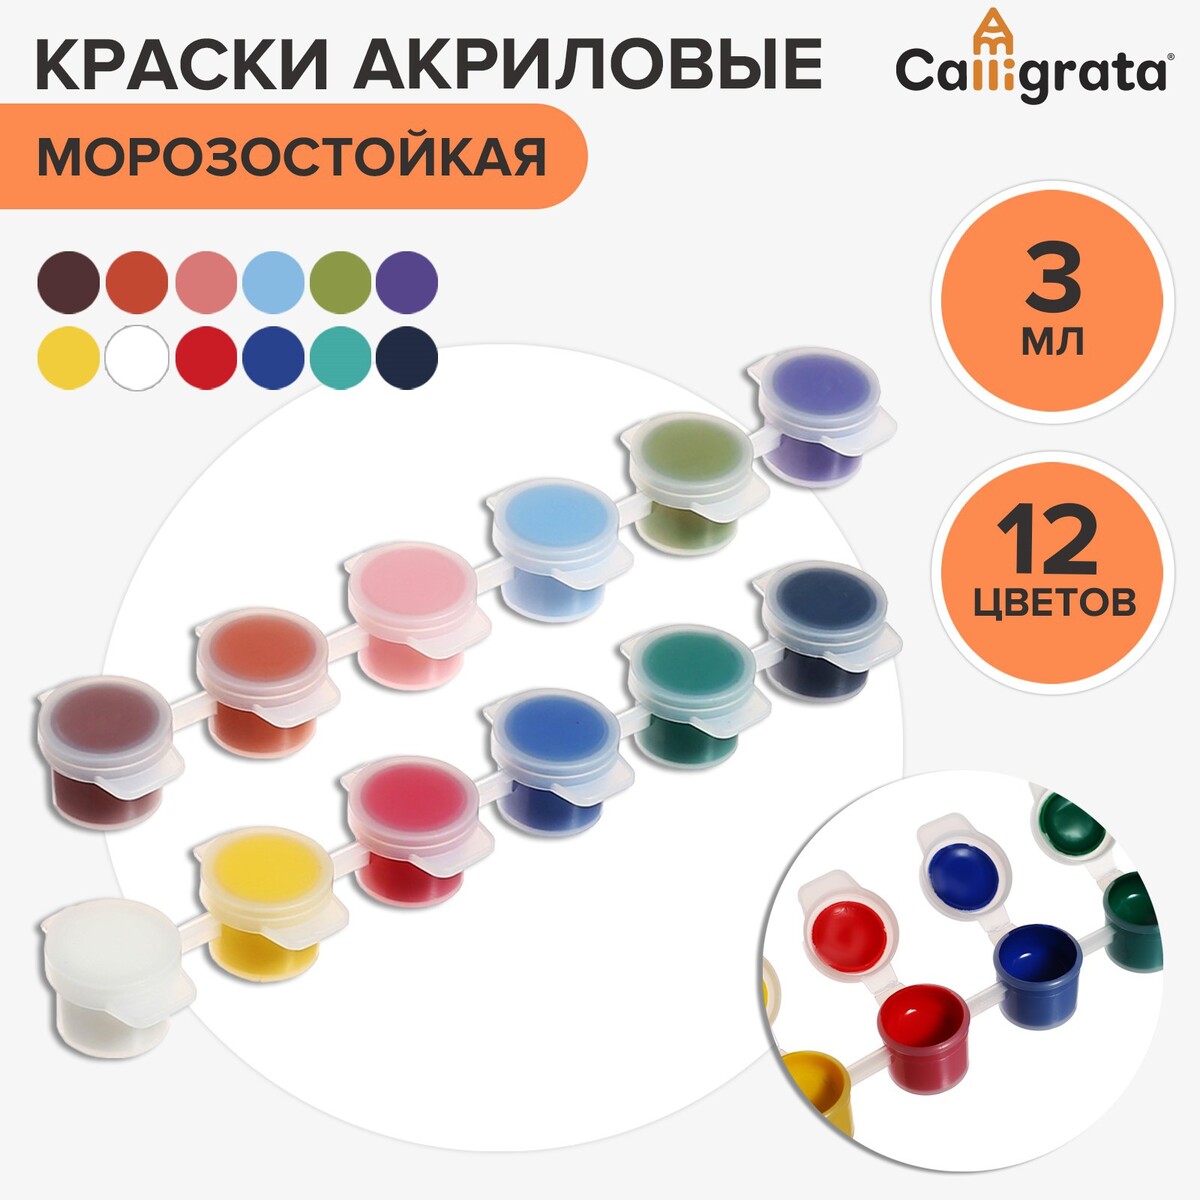 Краска акриловая, набор 12 цветов х 3 мл, calligrata, морозостойкие, в пакете акриловая шпатлёвка для внутренних работ 3 кг